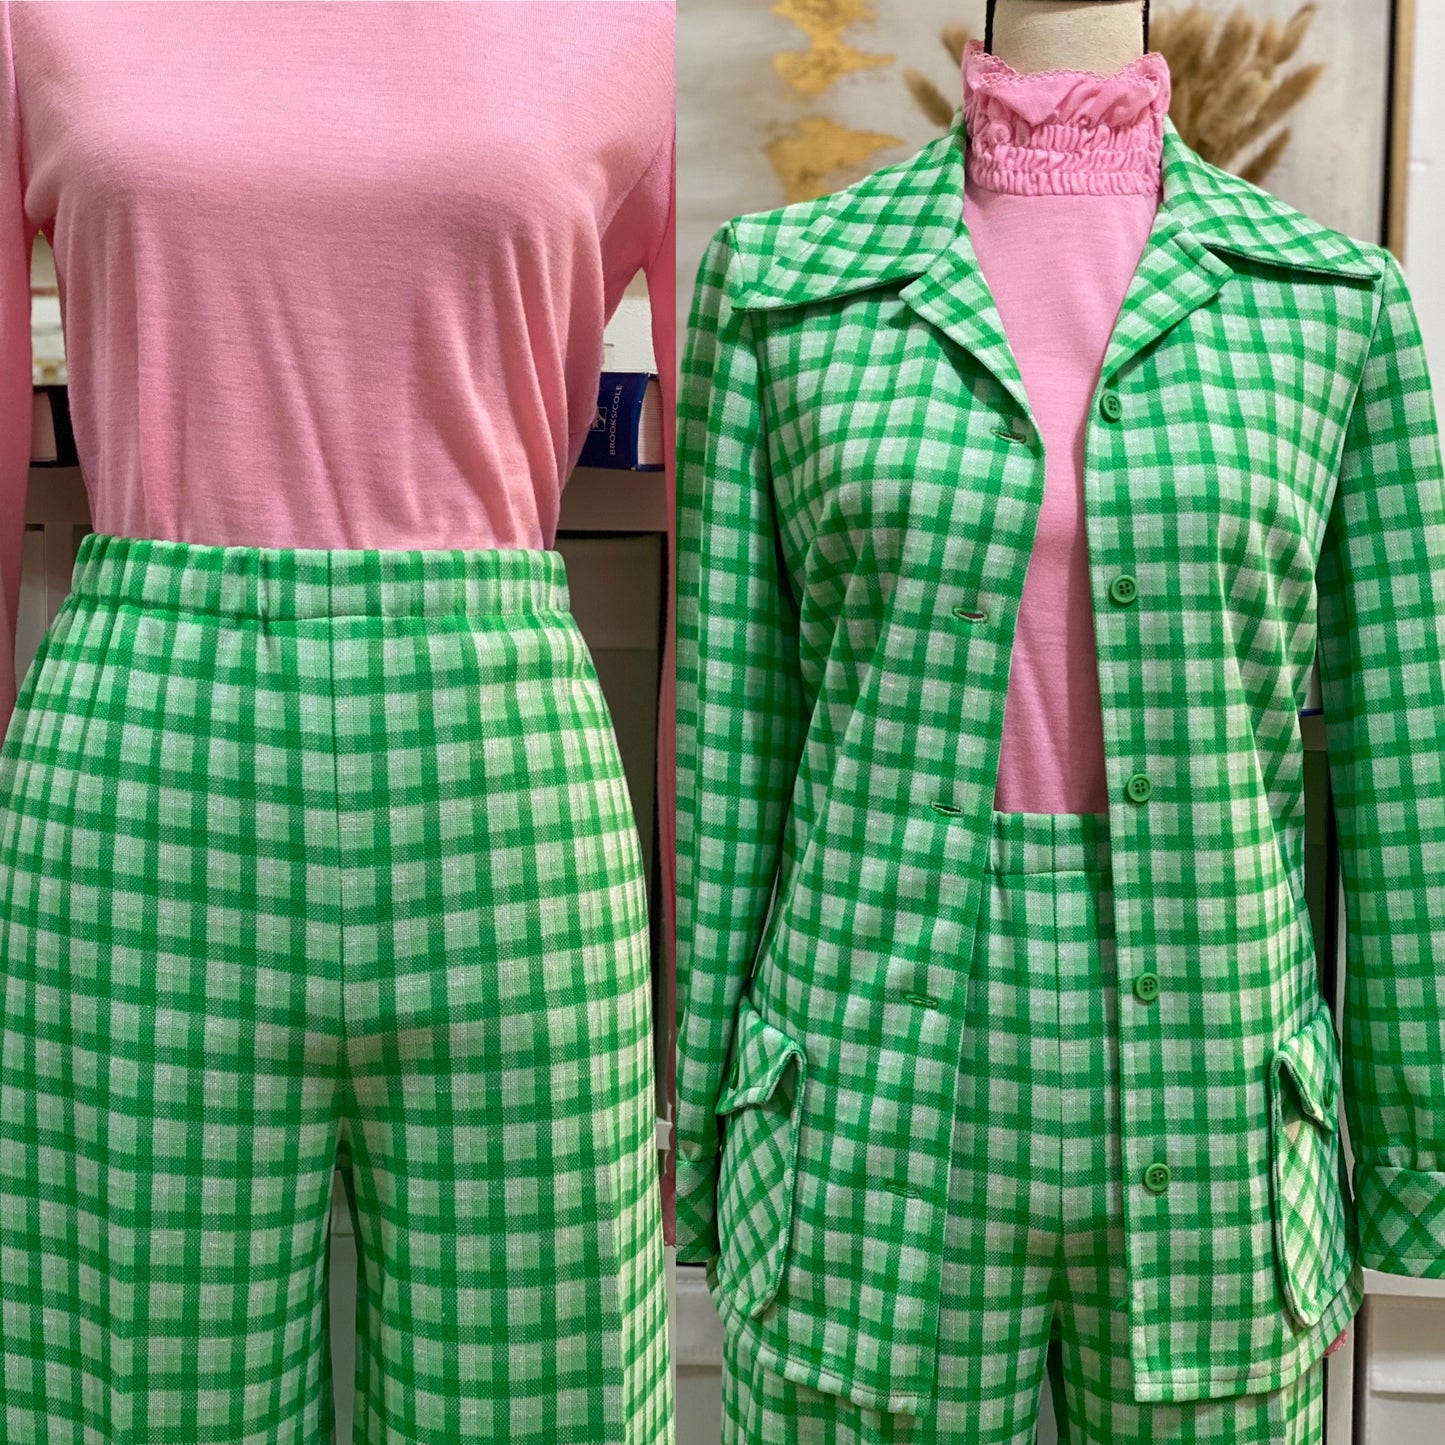 70's Green Plaid 2-Piece Set - Jacket & Bell Bottoms Pantsuit (S-L)